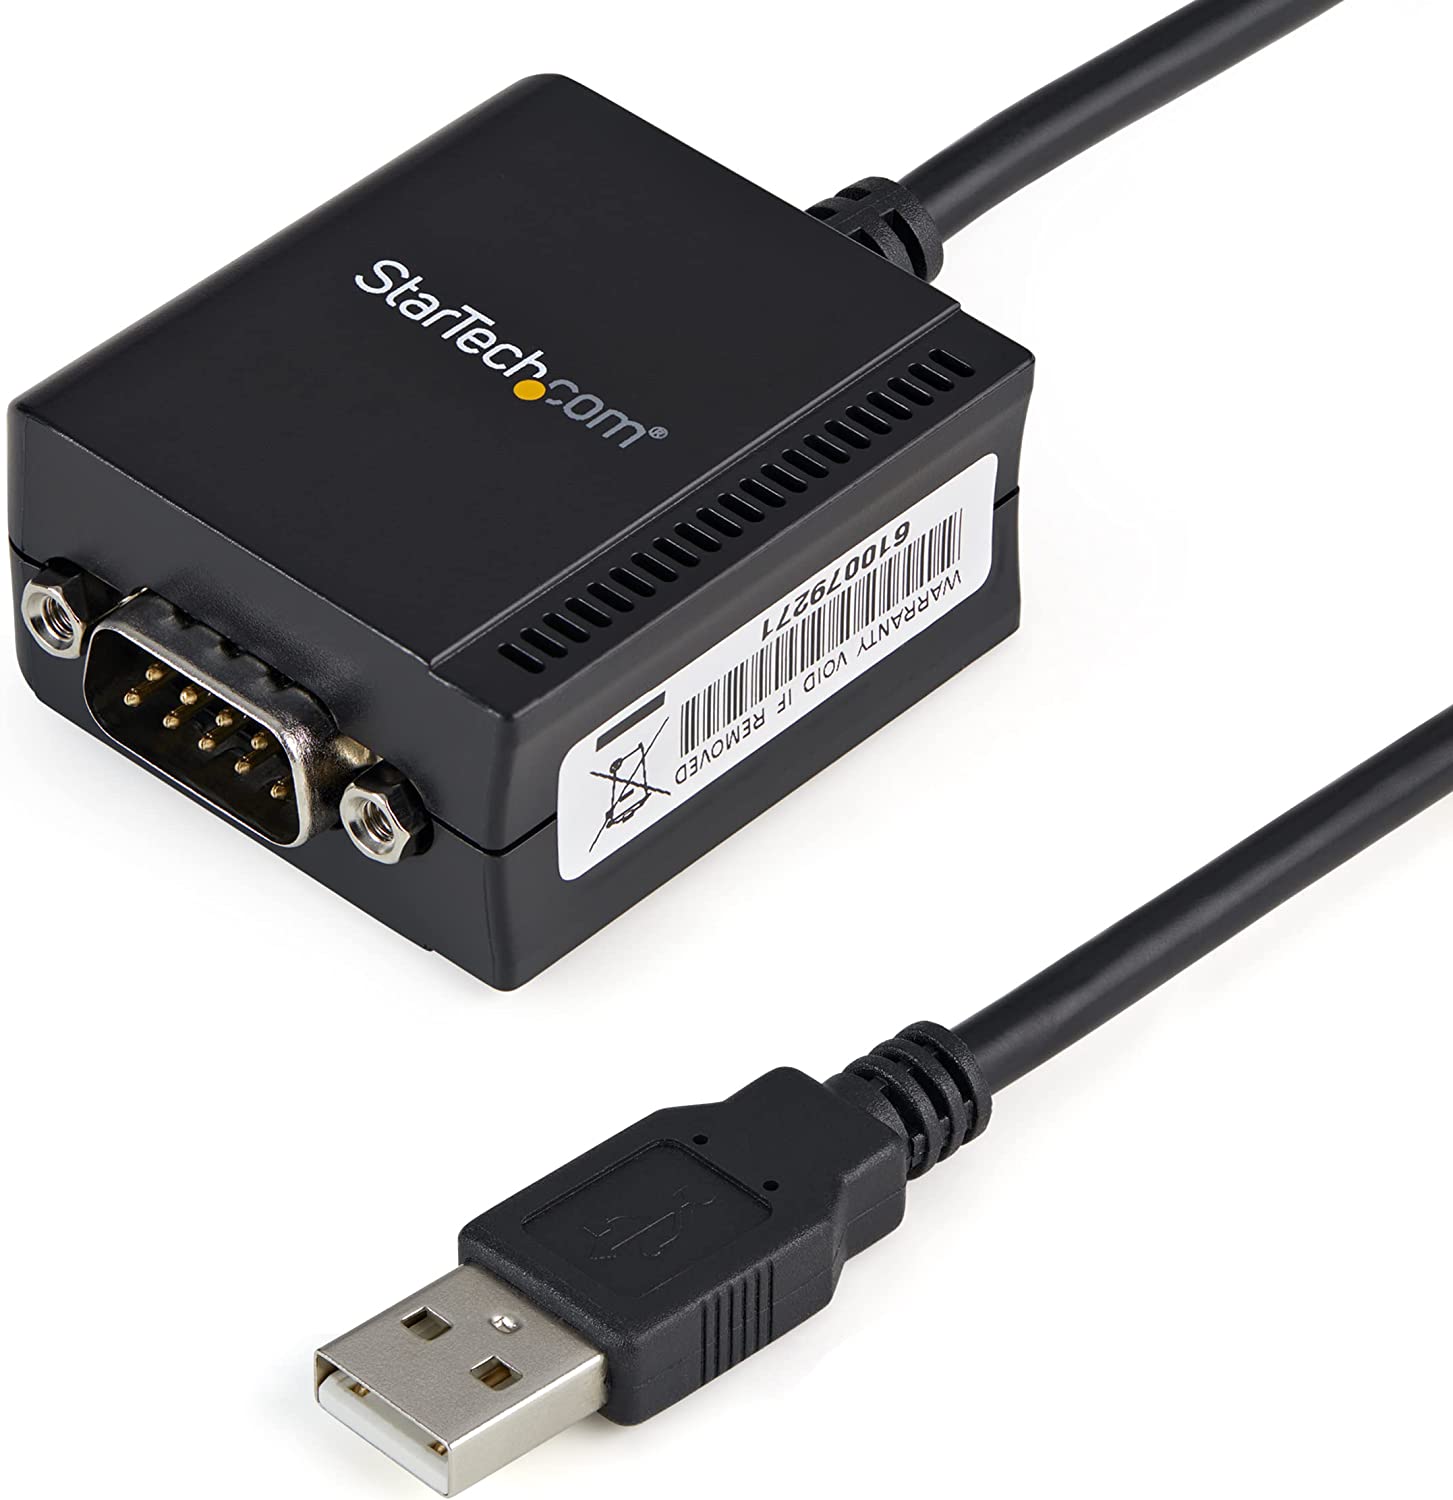 USB to Serial Adapter - 1 port - USB Powered - FTDI USB UART Chip 2